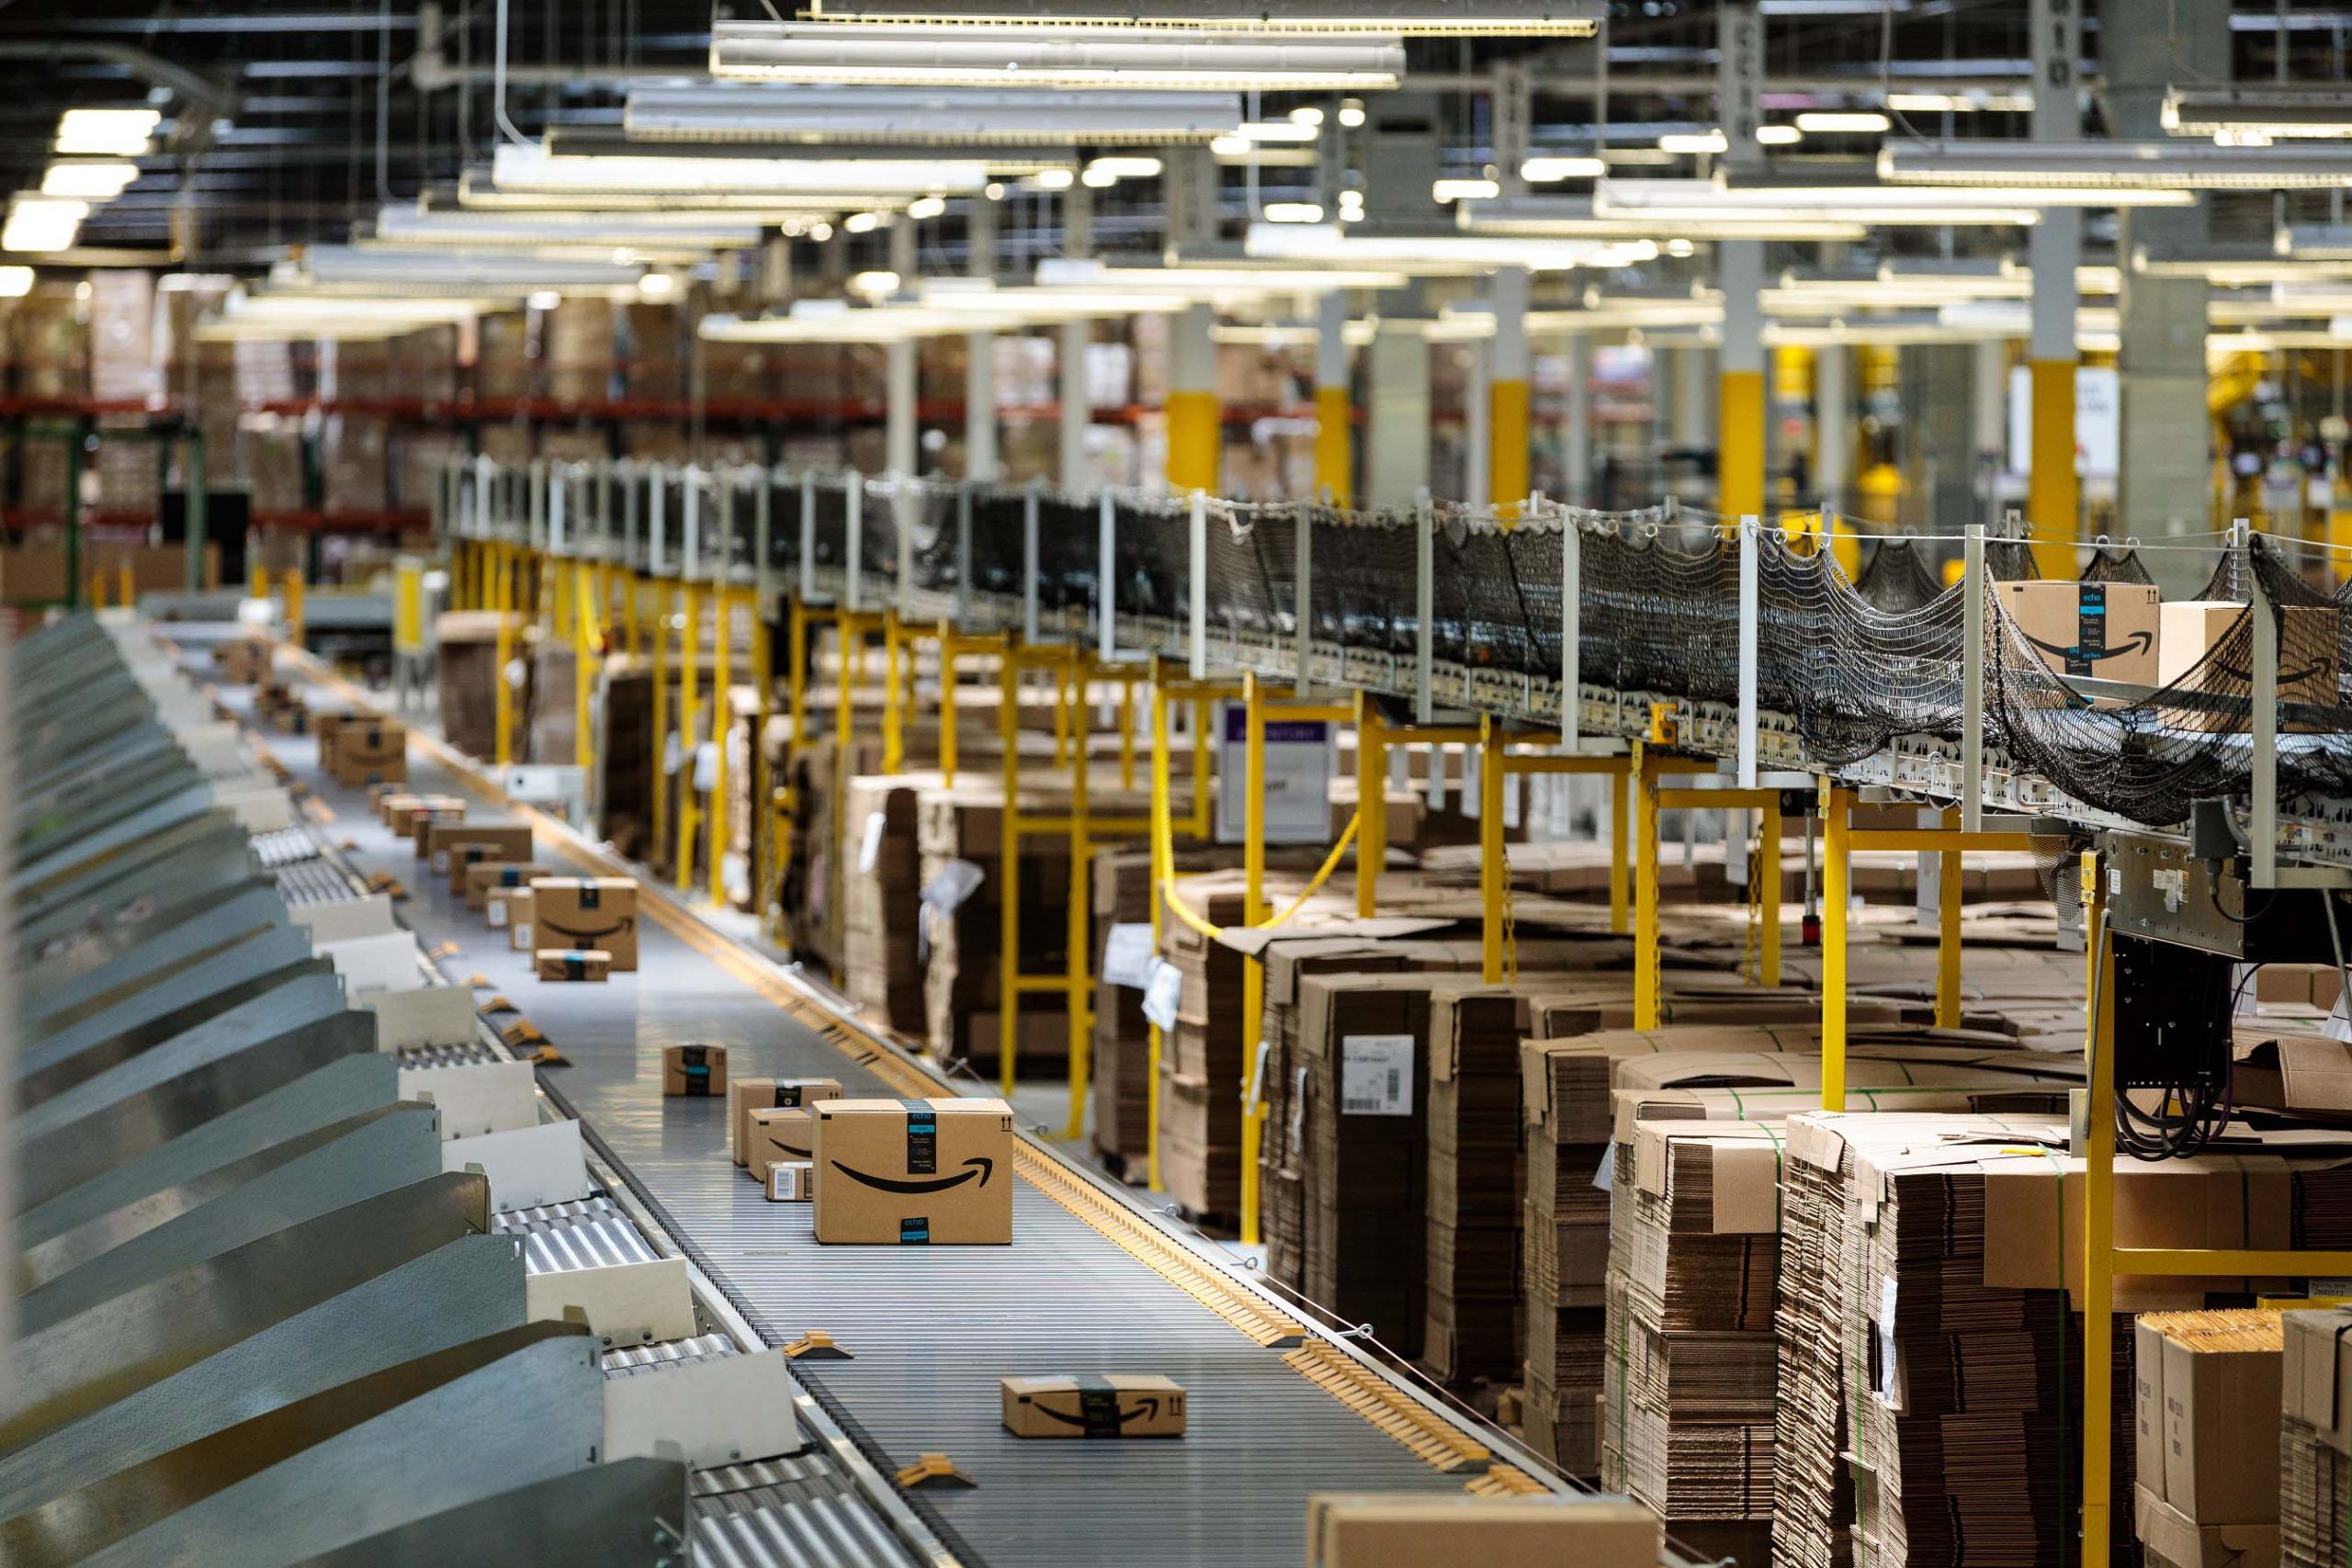 Amazon công bố Báo cáo Hoạt động dành cho Doanh nghiệp vừa và nhỏ Việt Nam năm 2021: gần 7.2 triệu sản phẩm của đối tác bán hàng Việt Nam đã được bán cho khách hàng Amazon trên khắp thế giới trong một năm